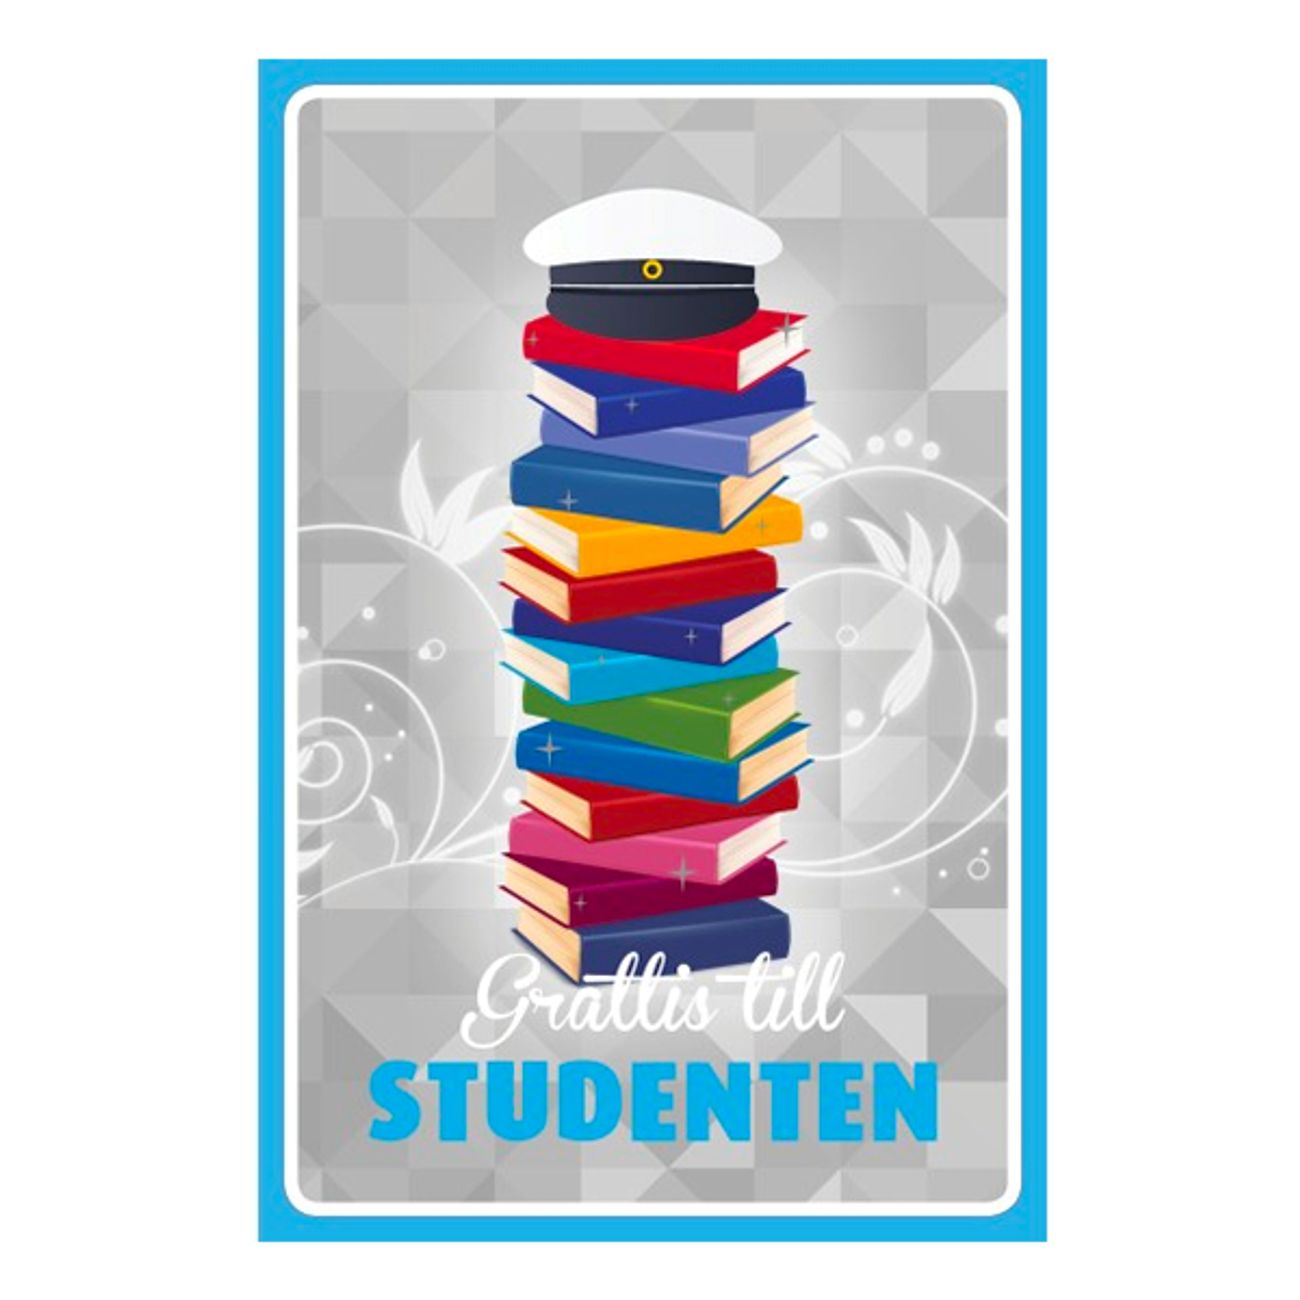 studentkort-grattis-till-studenten-bocker-73847-1